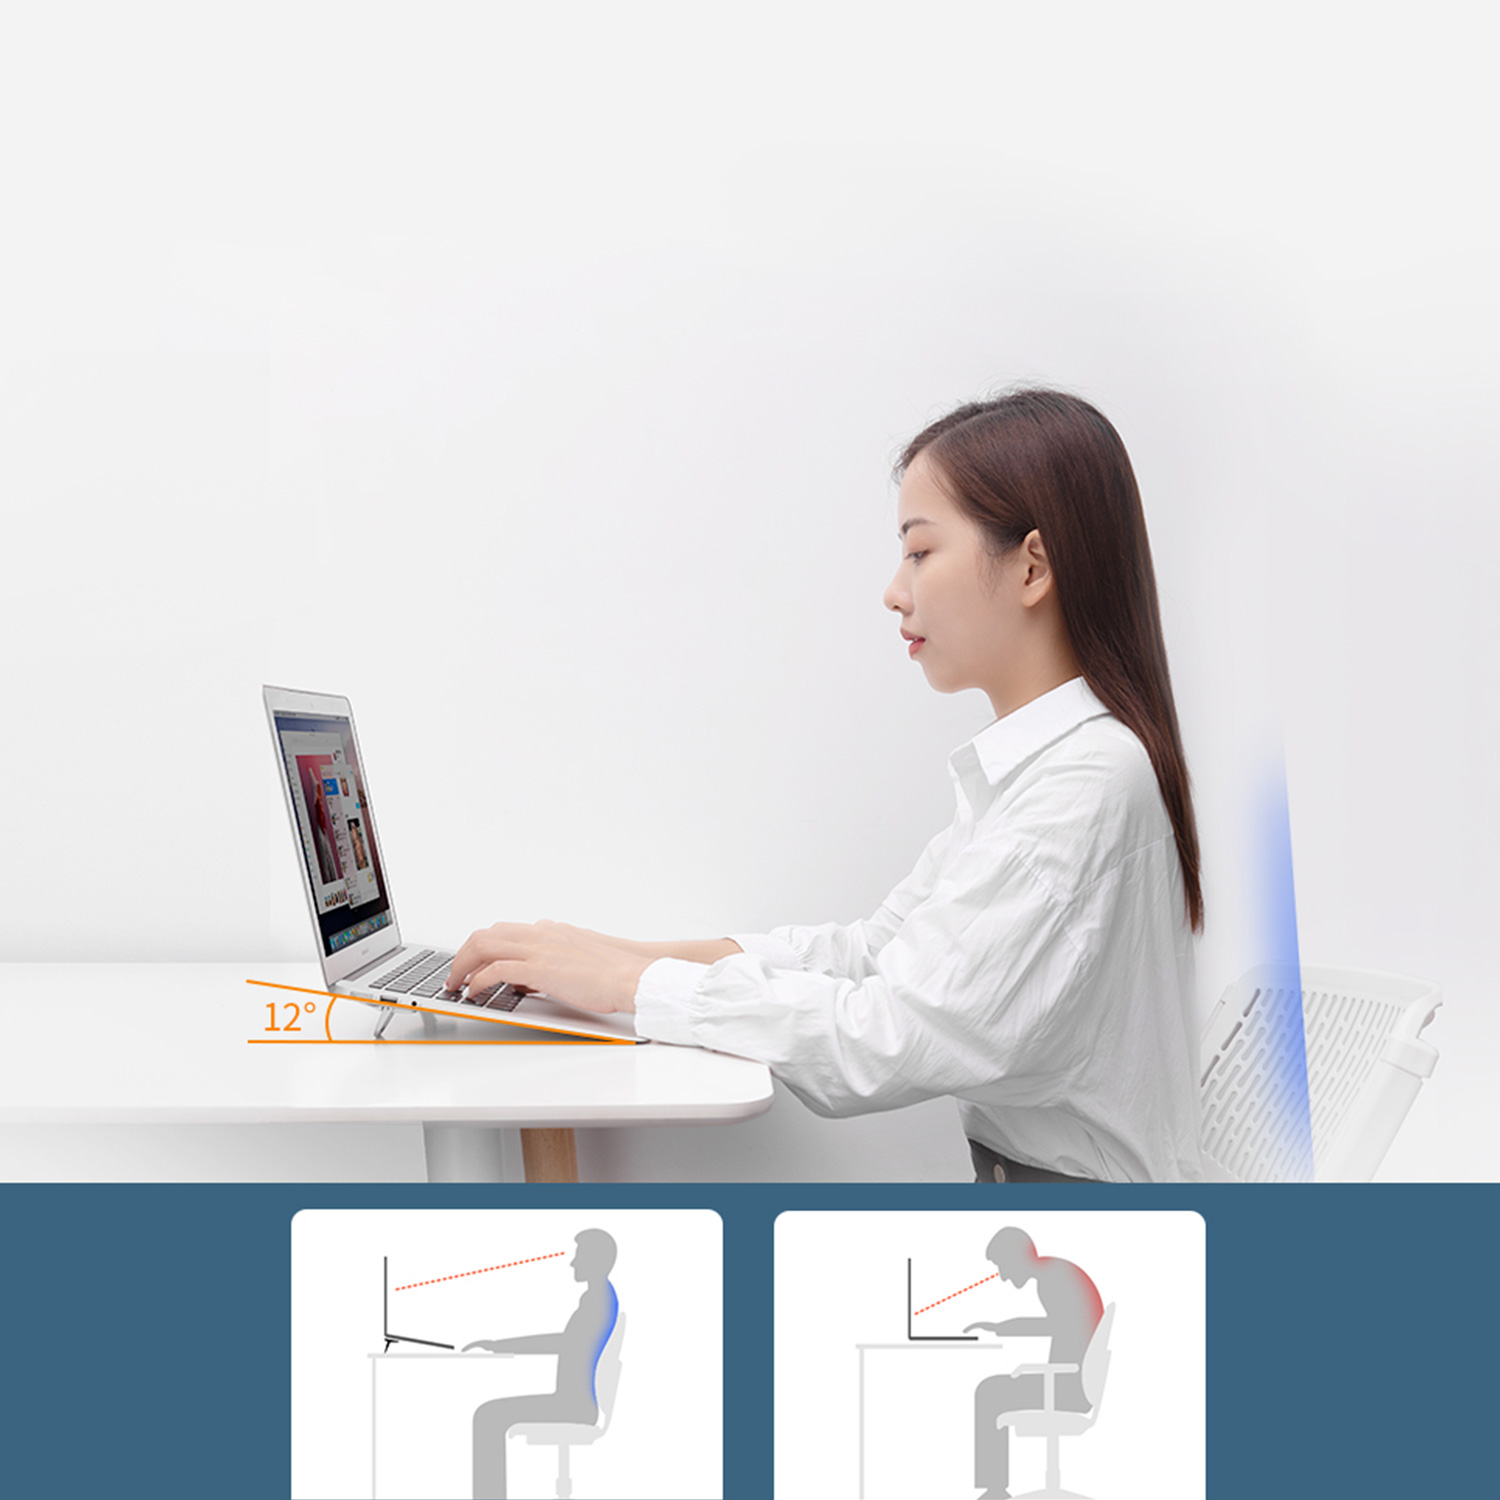 Podstawka pod laptopa  Nillkin Bolster portable stand - Właściwa pozycja ciała w czasie pracy przy komputerze